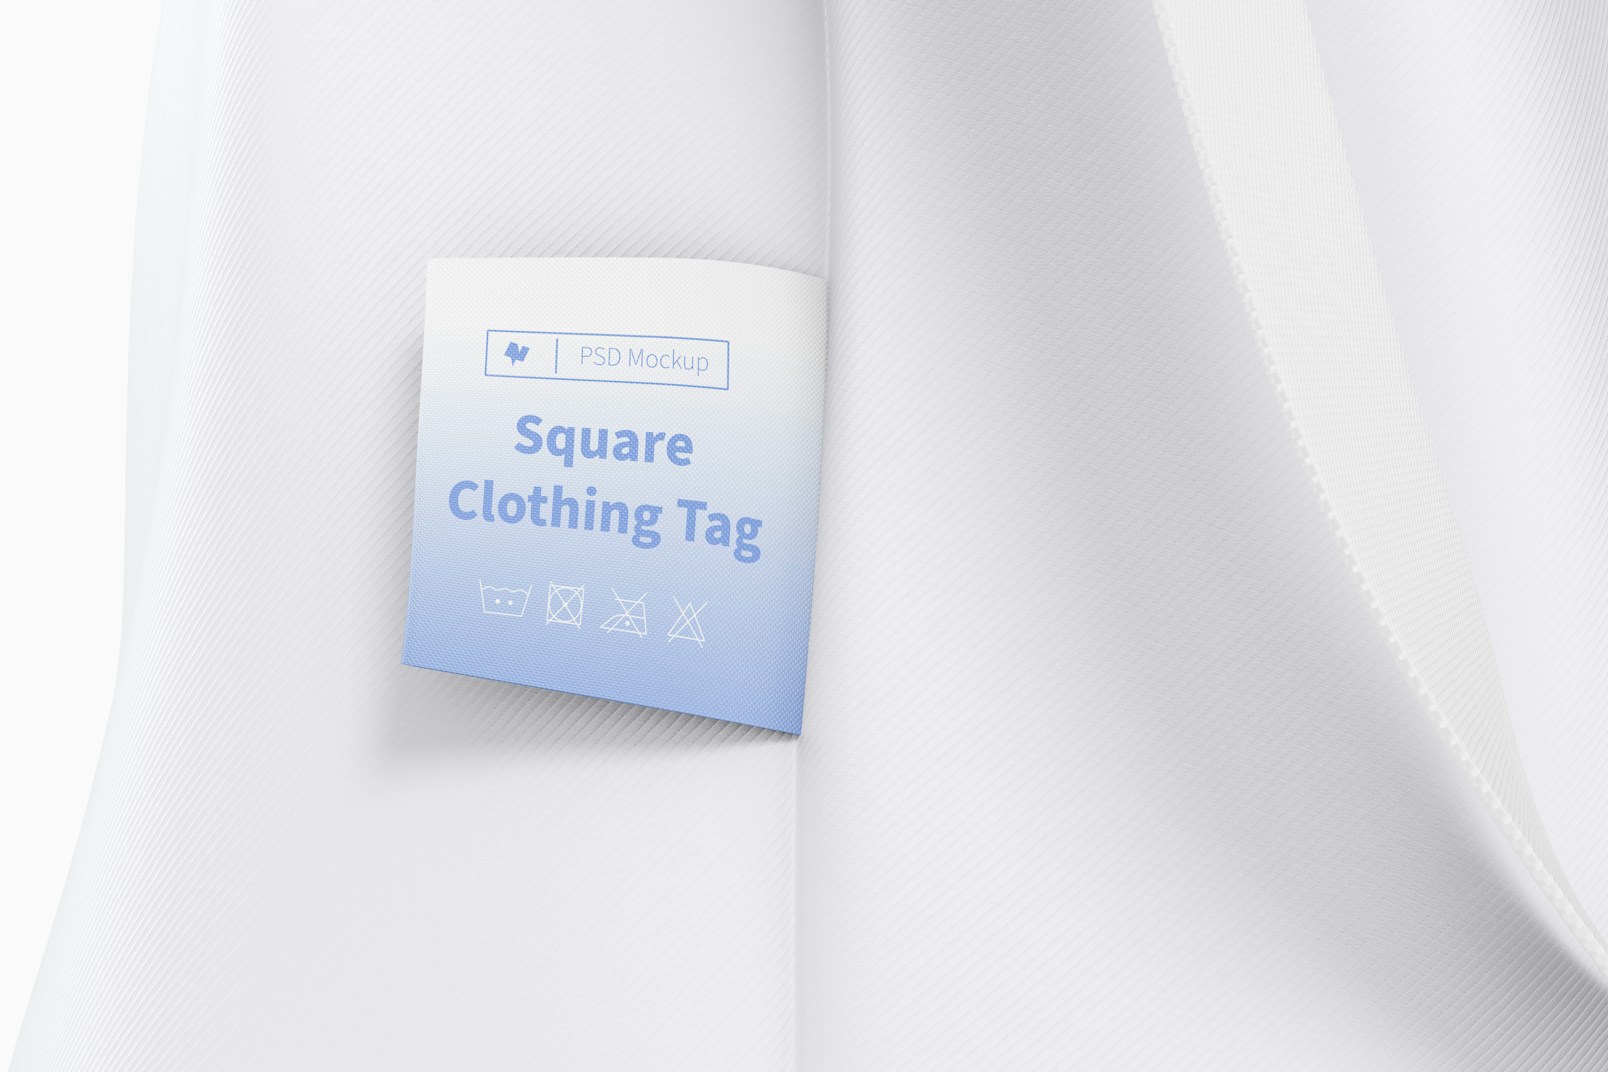 Square Clothing Tag Mockup